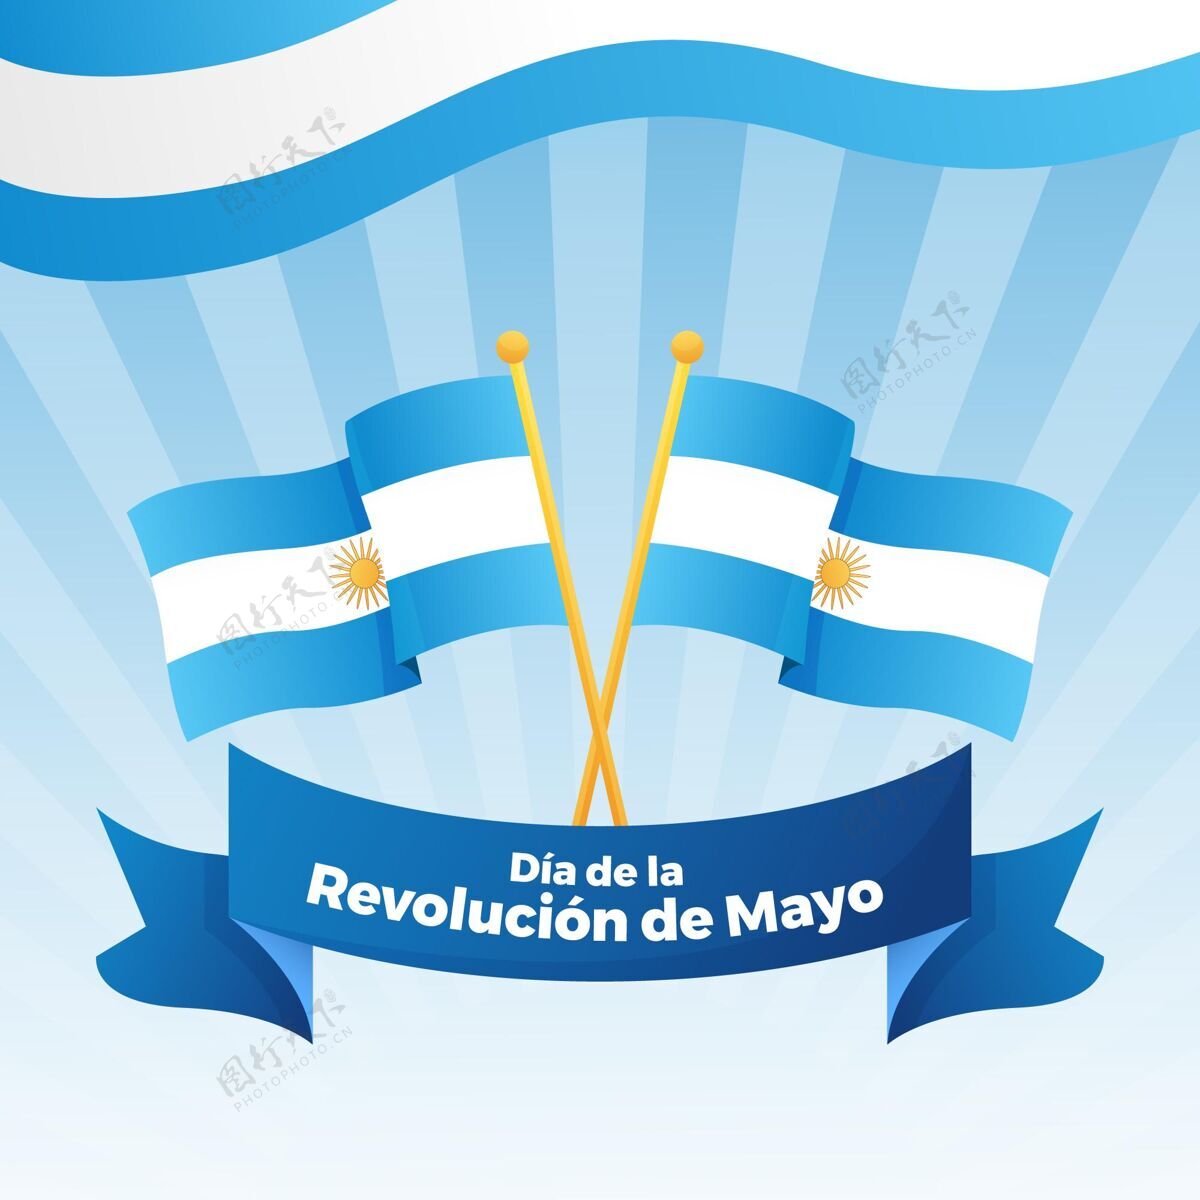 公共假日阿根廷马约革命的梯度插图五月二十五日爱国梯度